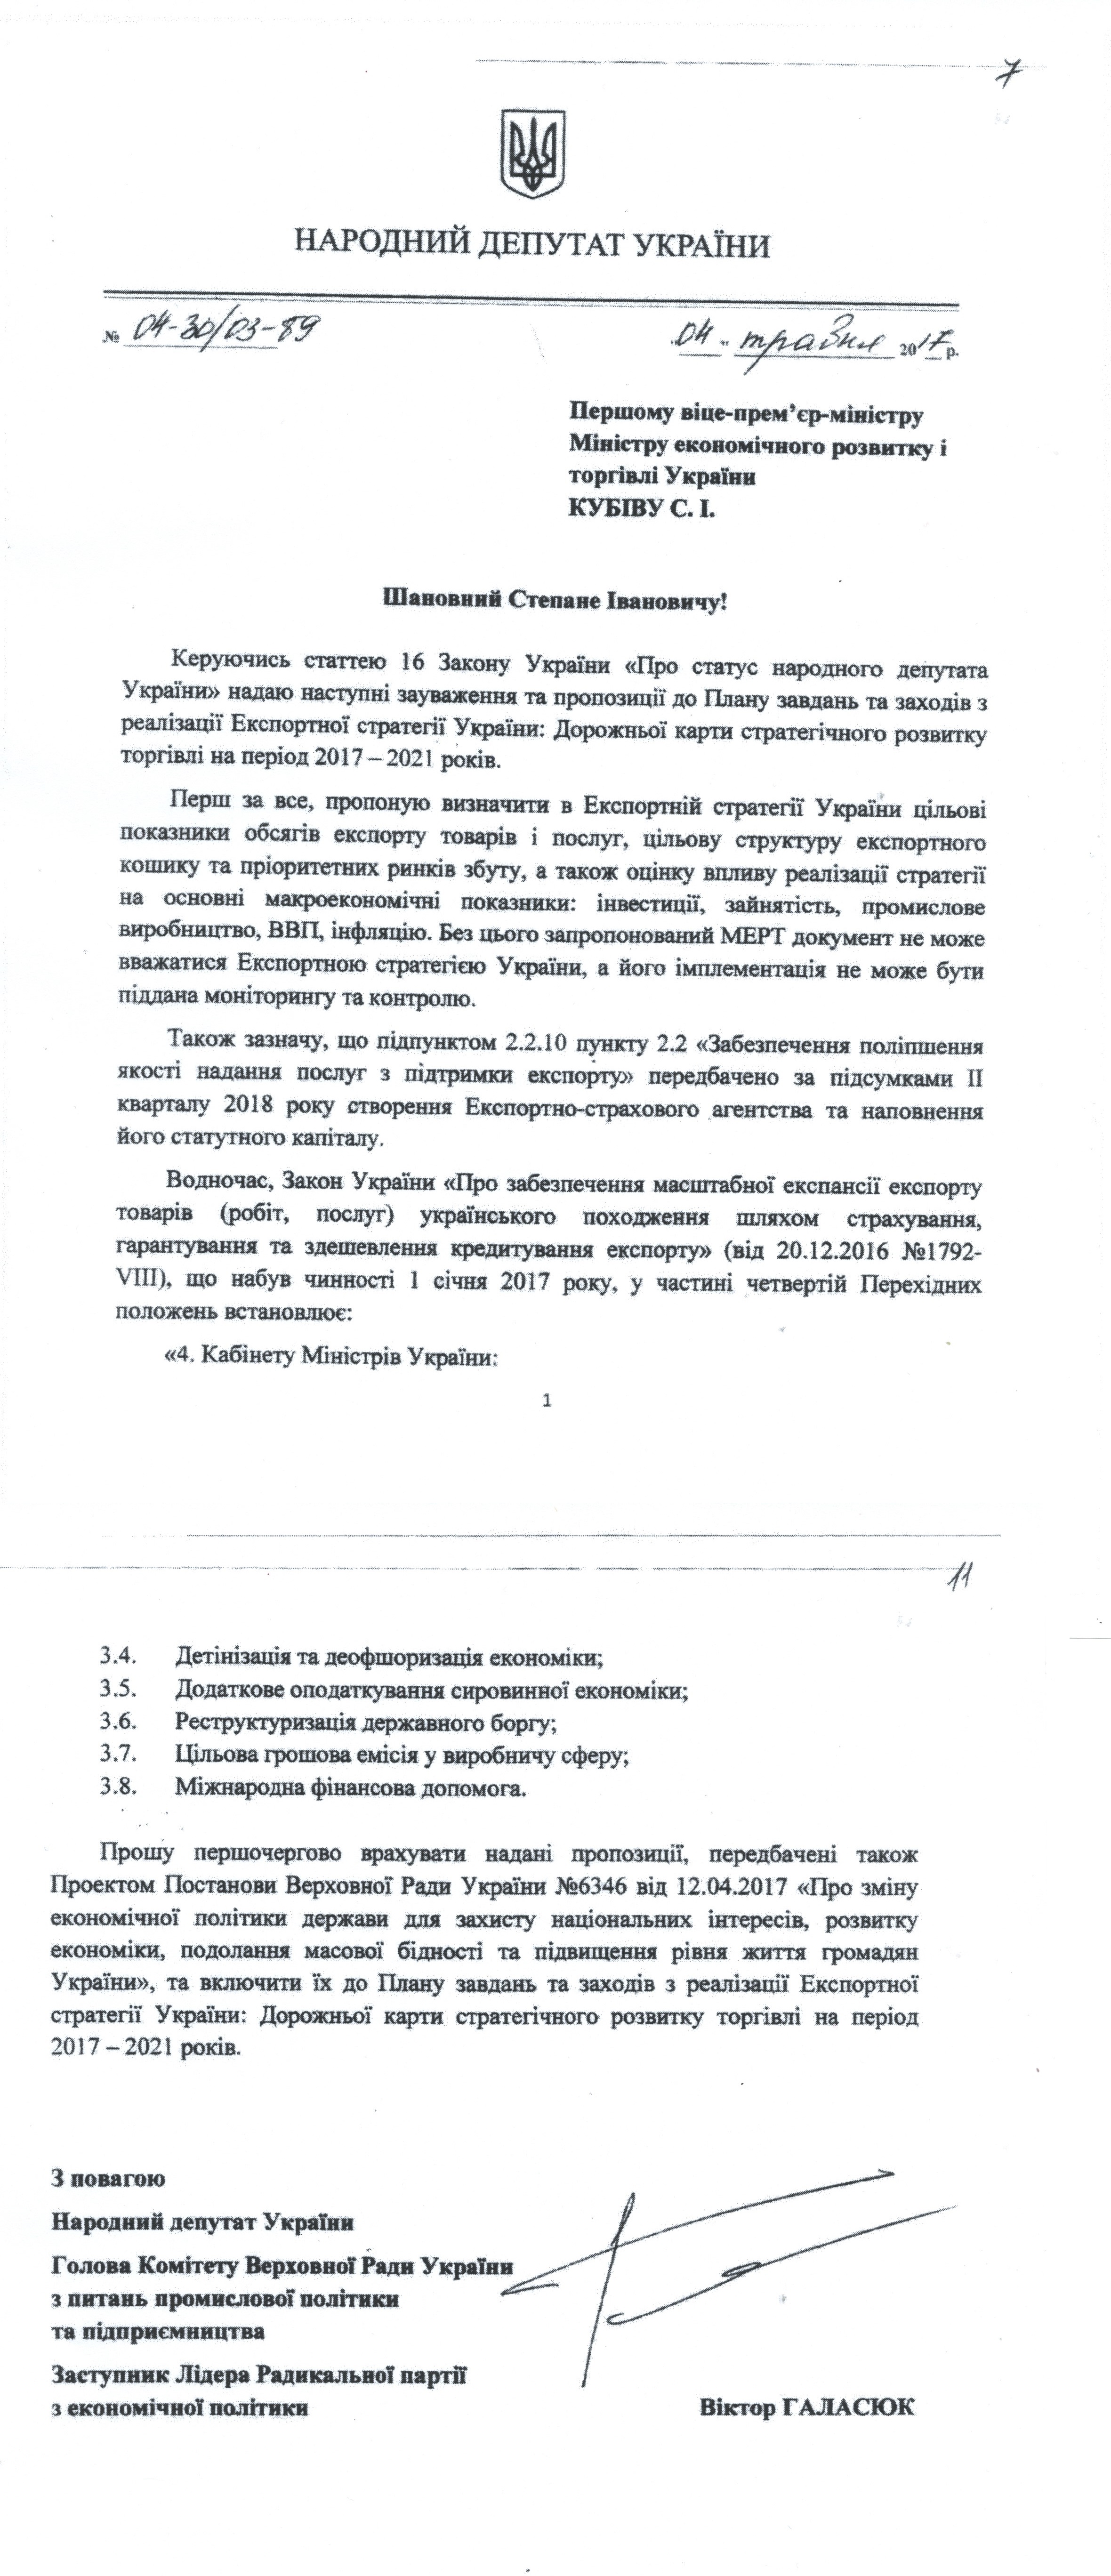 Додаток до листа від народного депутата Віктора Галасюка